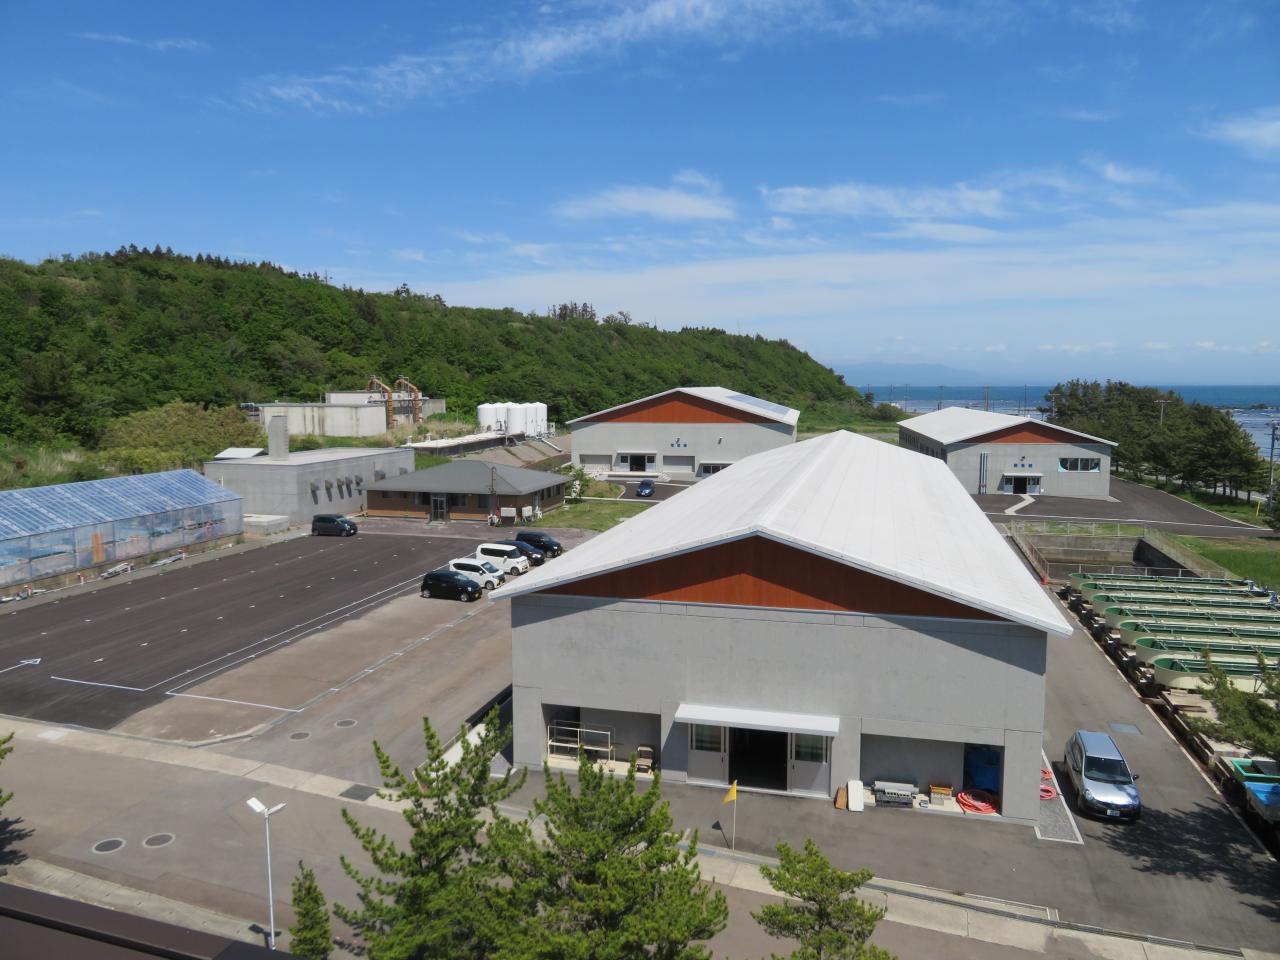 本館棟屋上から眺めた栽培漁業施設 [142KB]